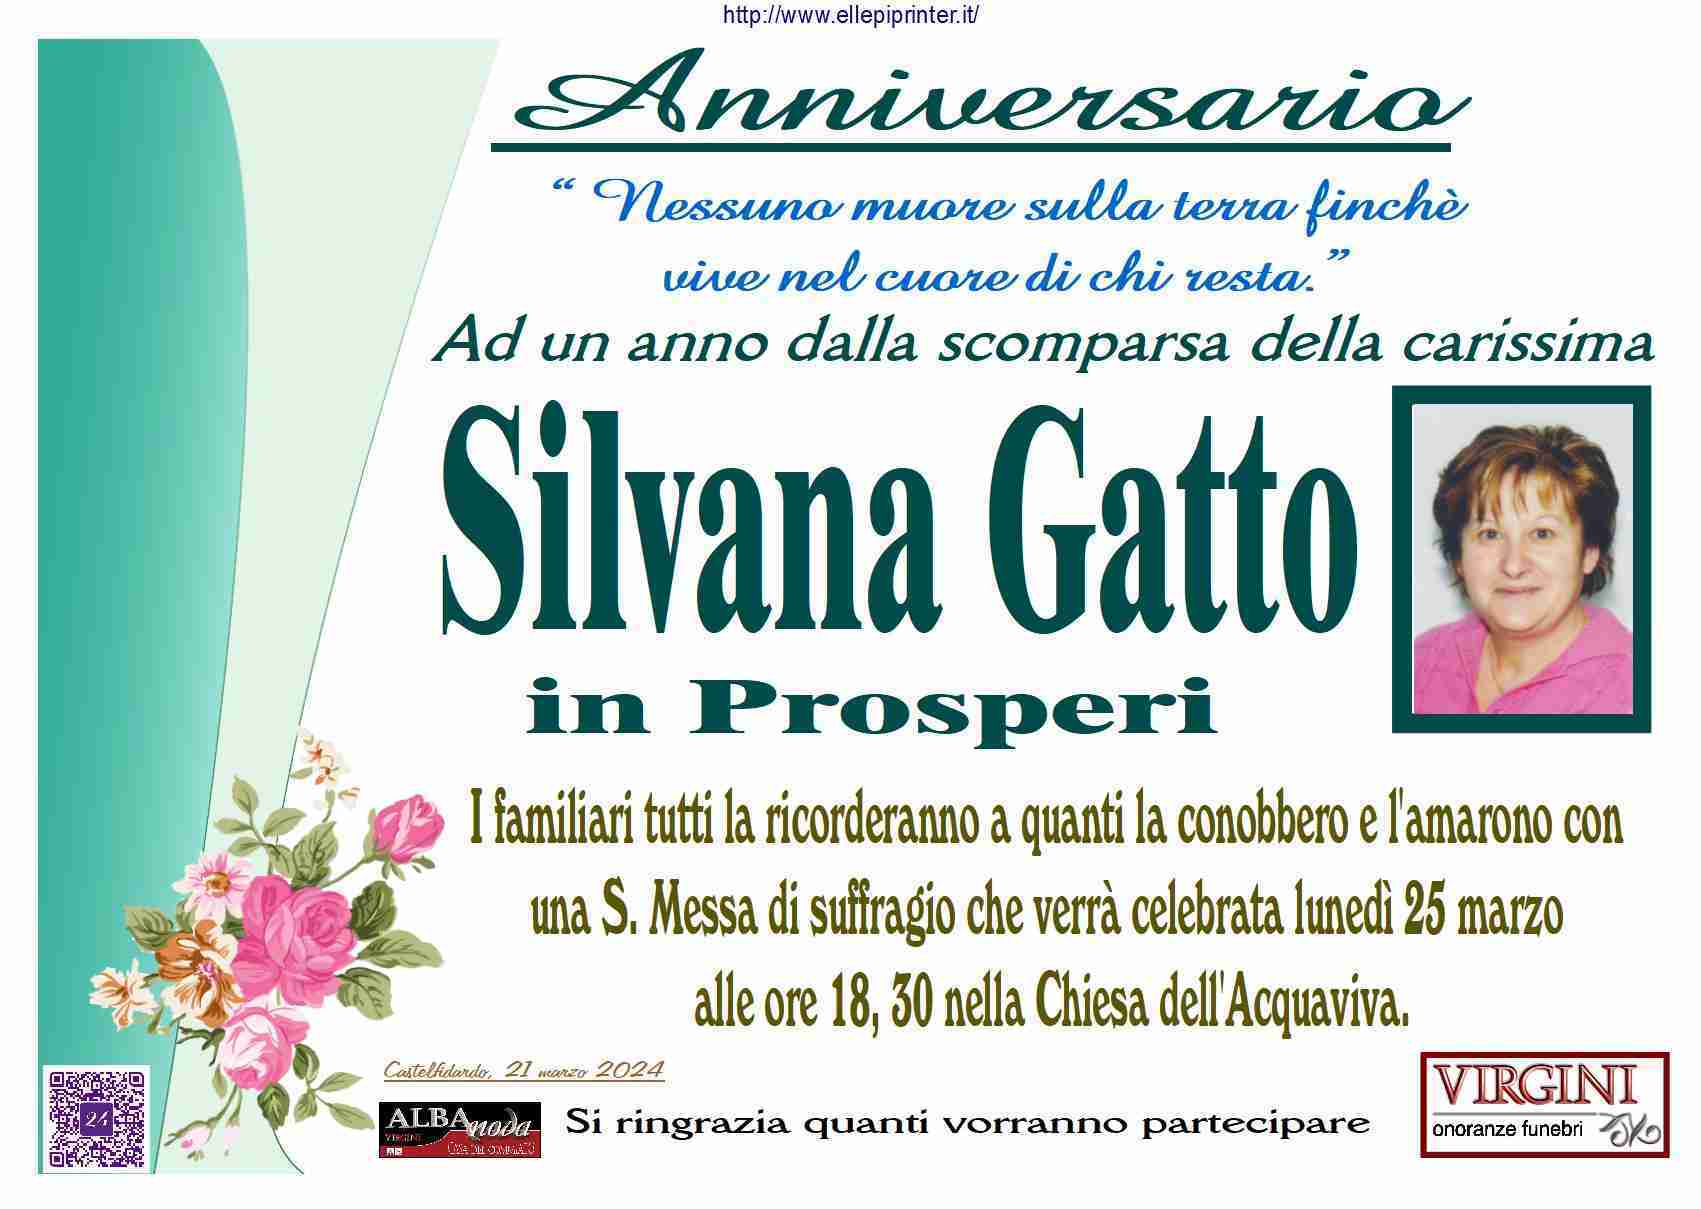 Silvana Gatto